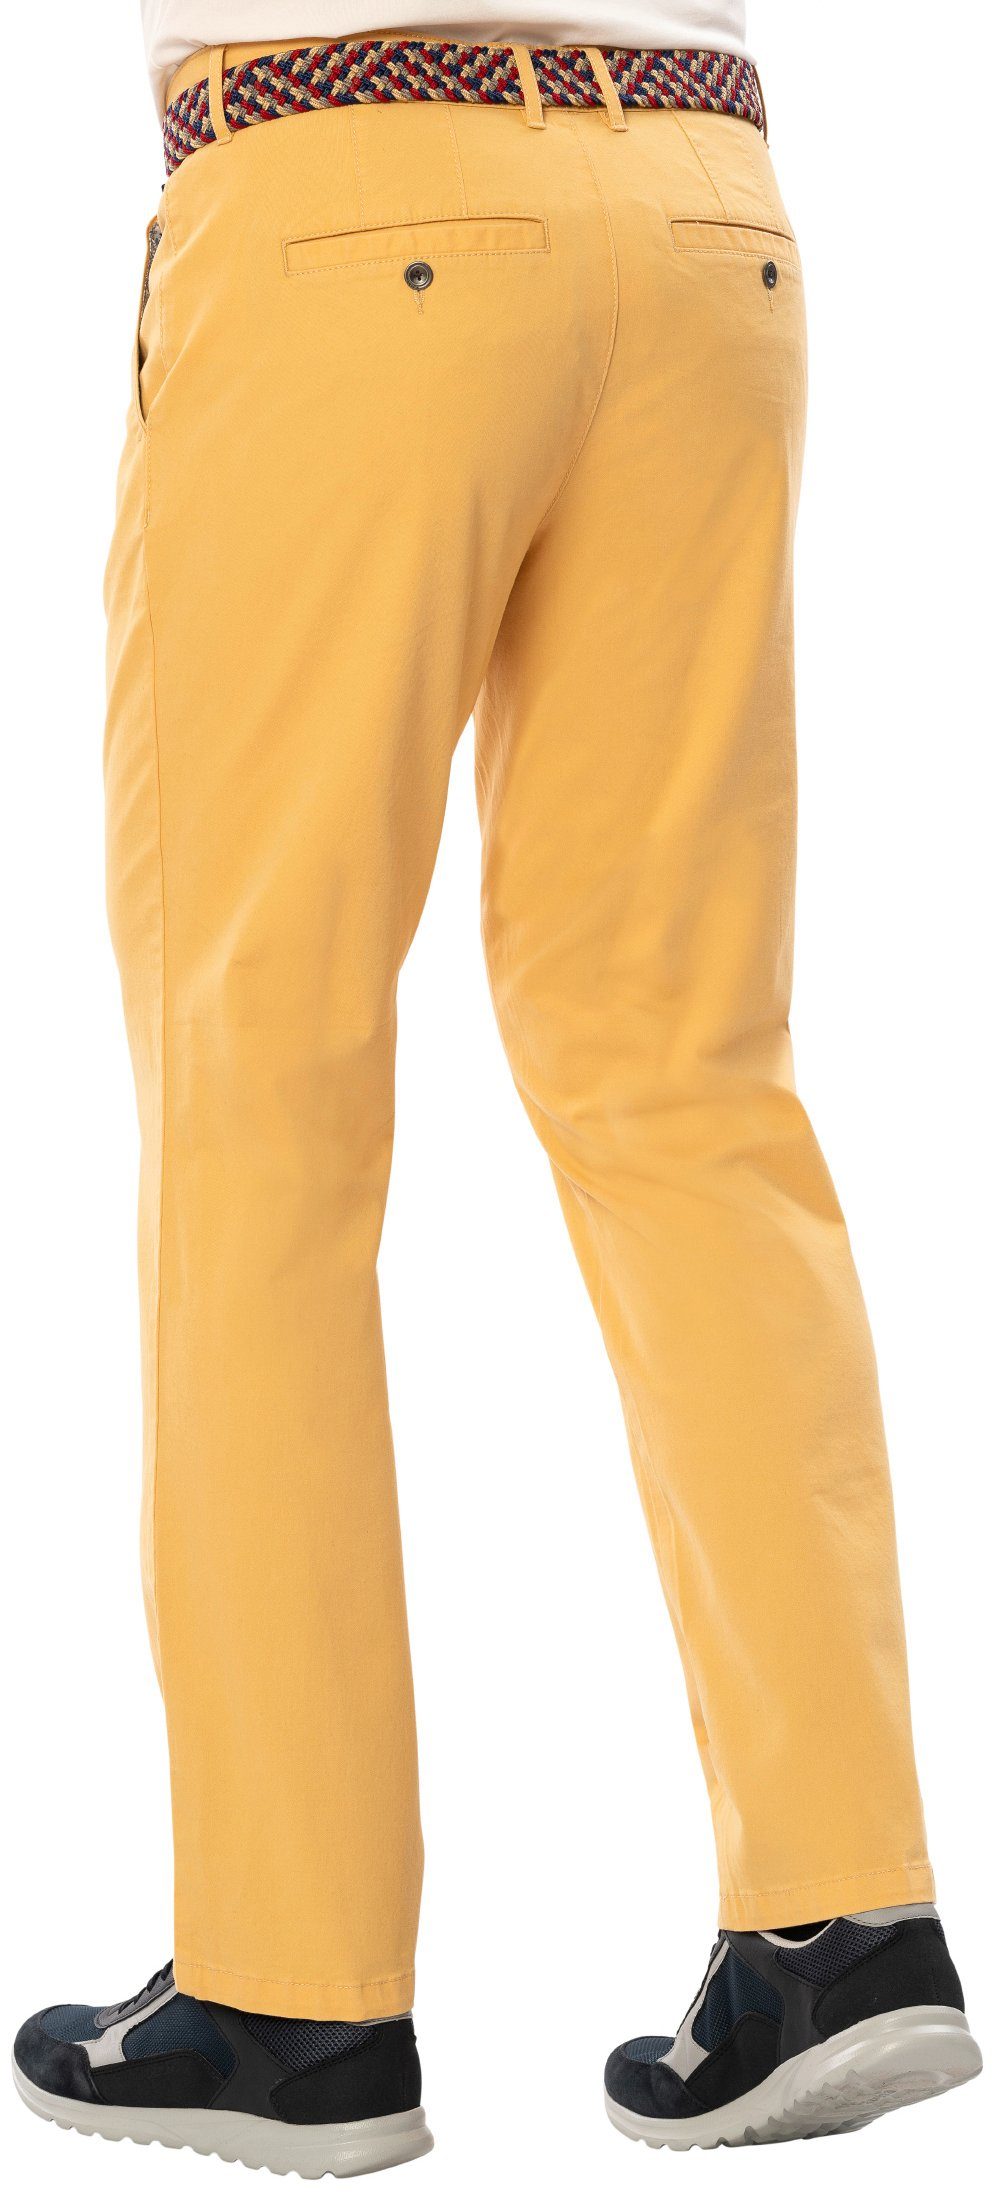 Suprax Chinos in gelb im Regular-fit-Passform, mit mehrfarbigem Chino-Stil und Flechtgürtel